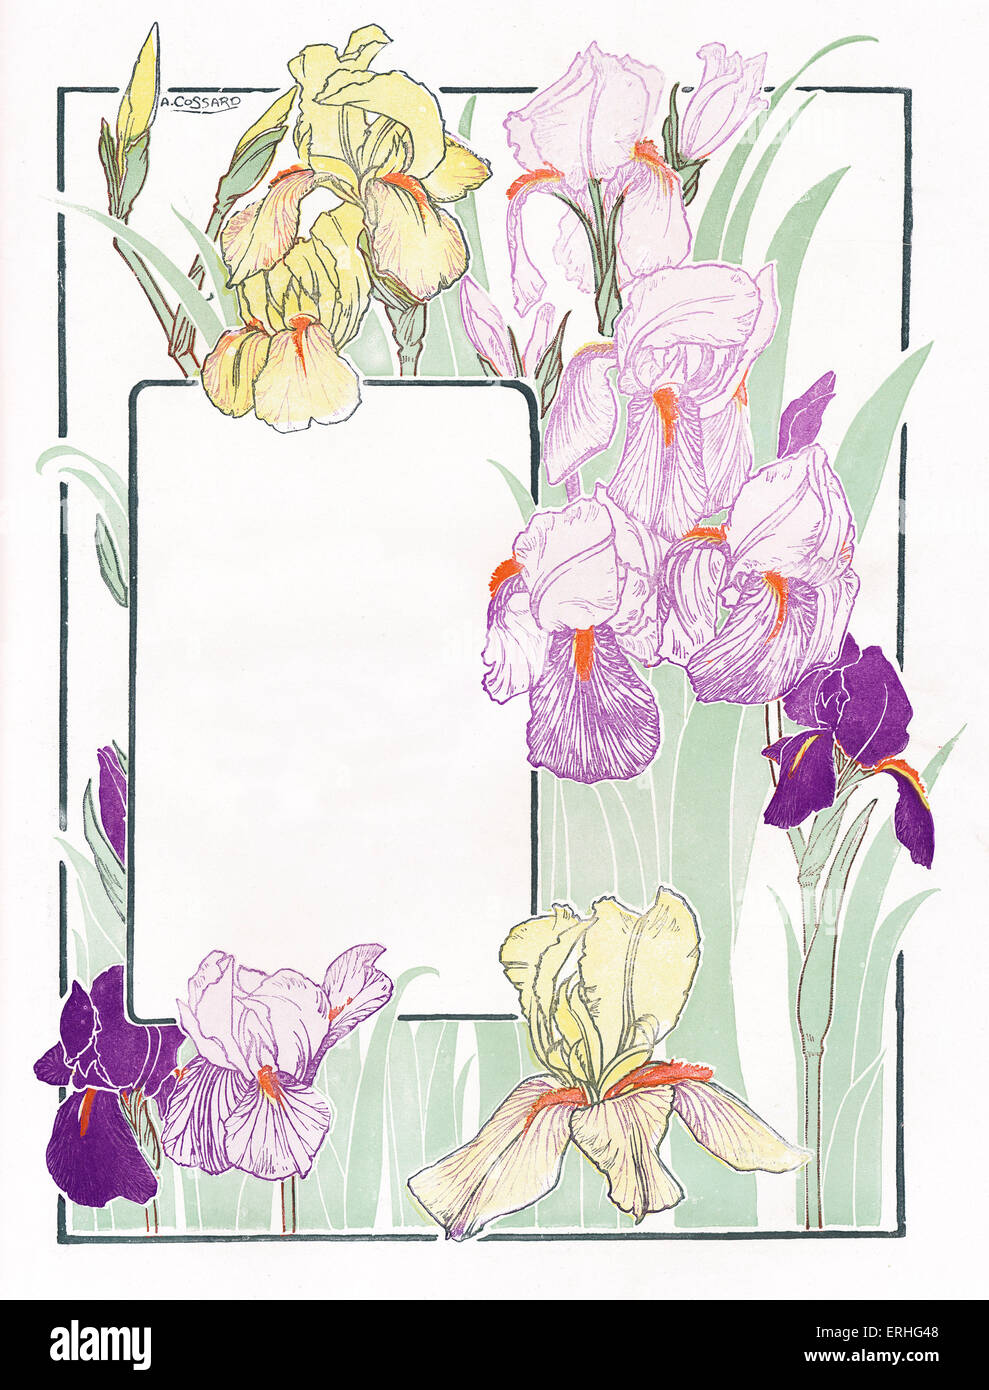 Frontière Floral - de joindre à la frontière, ou surround texte avec fleurs de printemps. Convient pour la page de titre, ex libris, carte de vœux, Banque D'Images